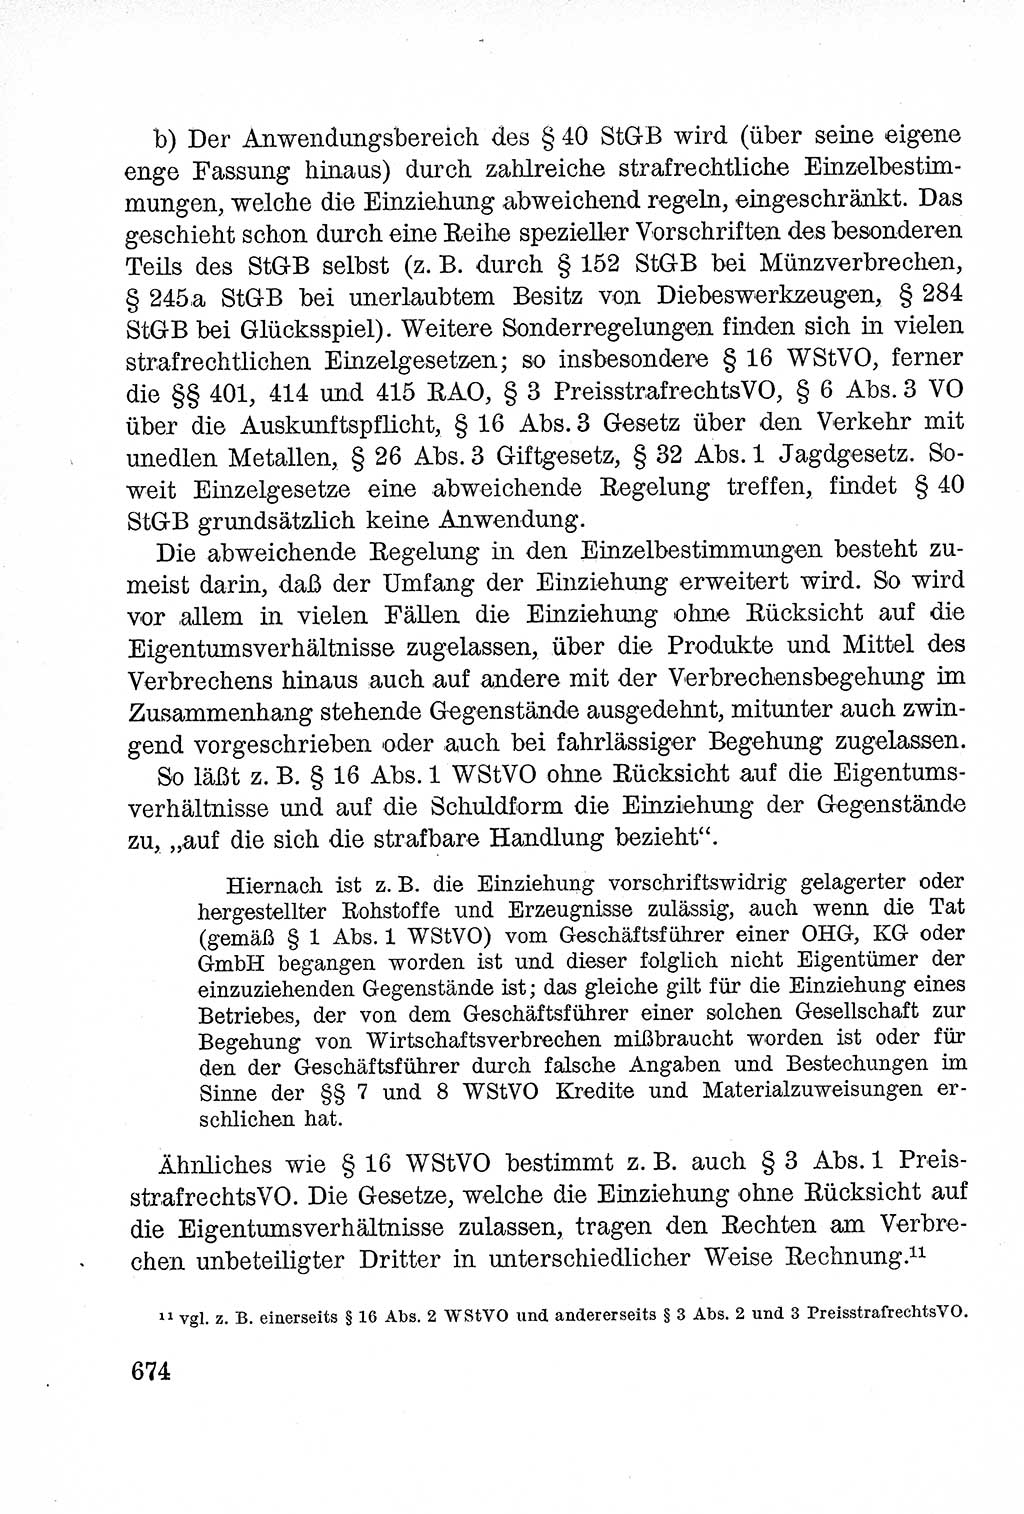 Lehrbuch des Strafrechts der Deutschen Demokratischen Republik (DDR), Allgemeiner Teil 1957, Seite 674 (Lb. Strafr. DDR AT 1957, S. 674)